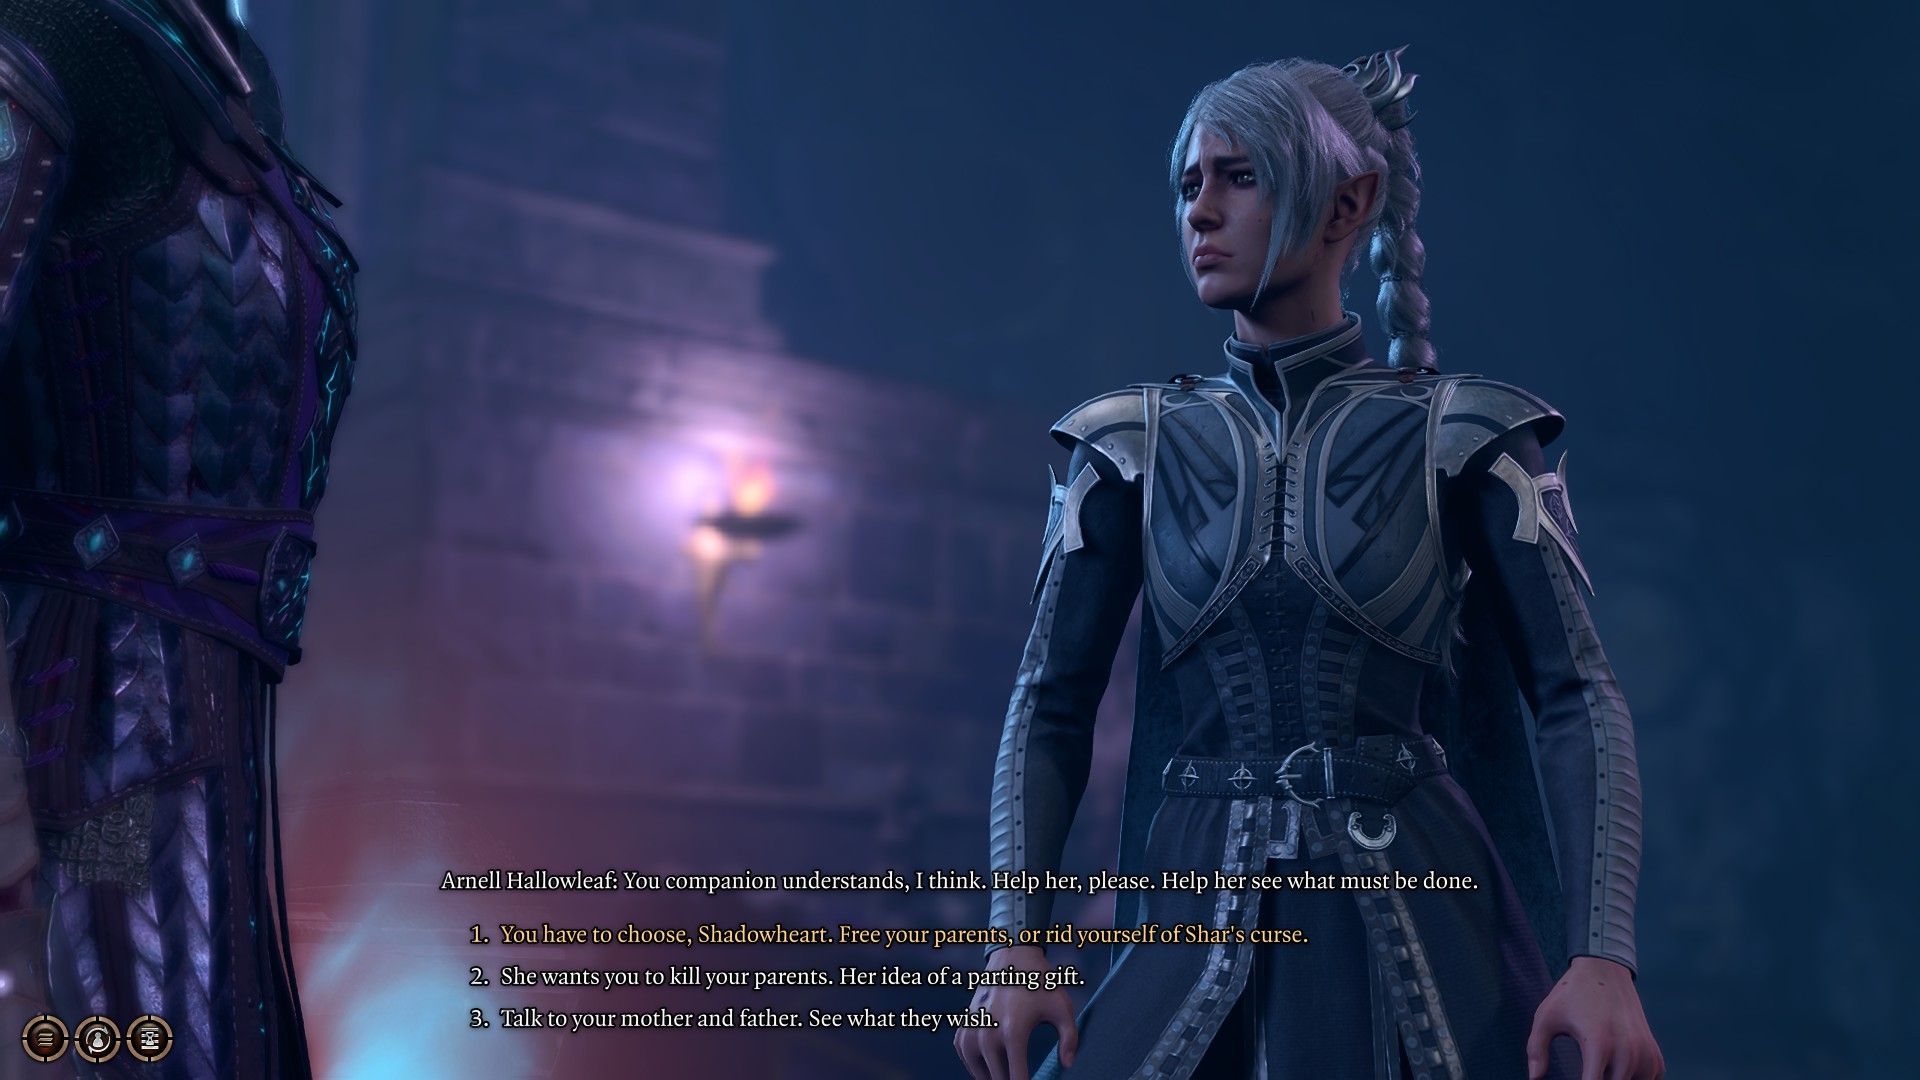 Der Spieler sagt Shadowheart, dass sie über das Schicksal ihrer Eltern entscheiden soll